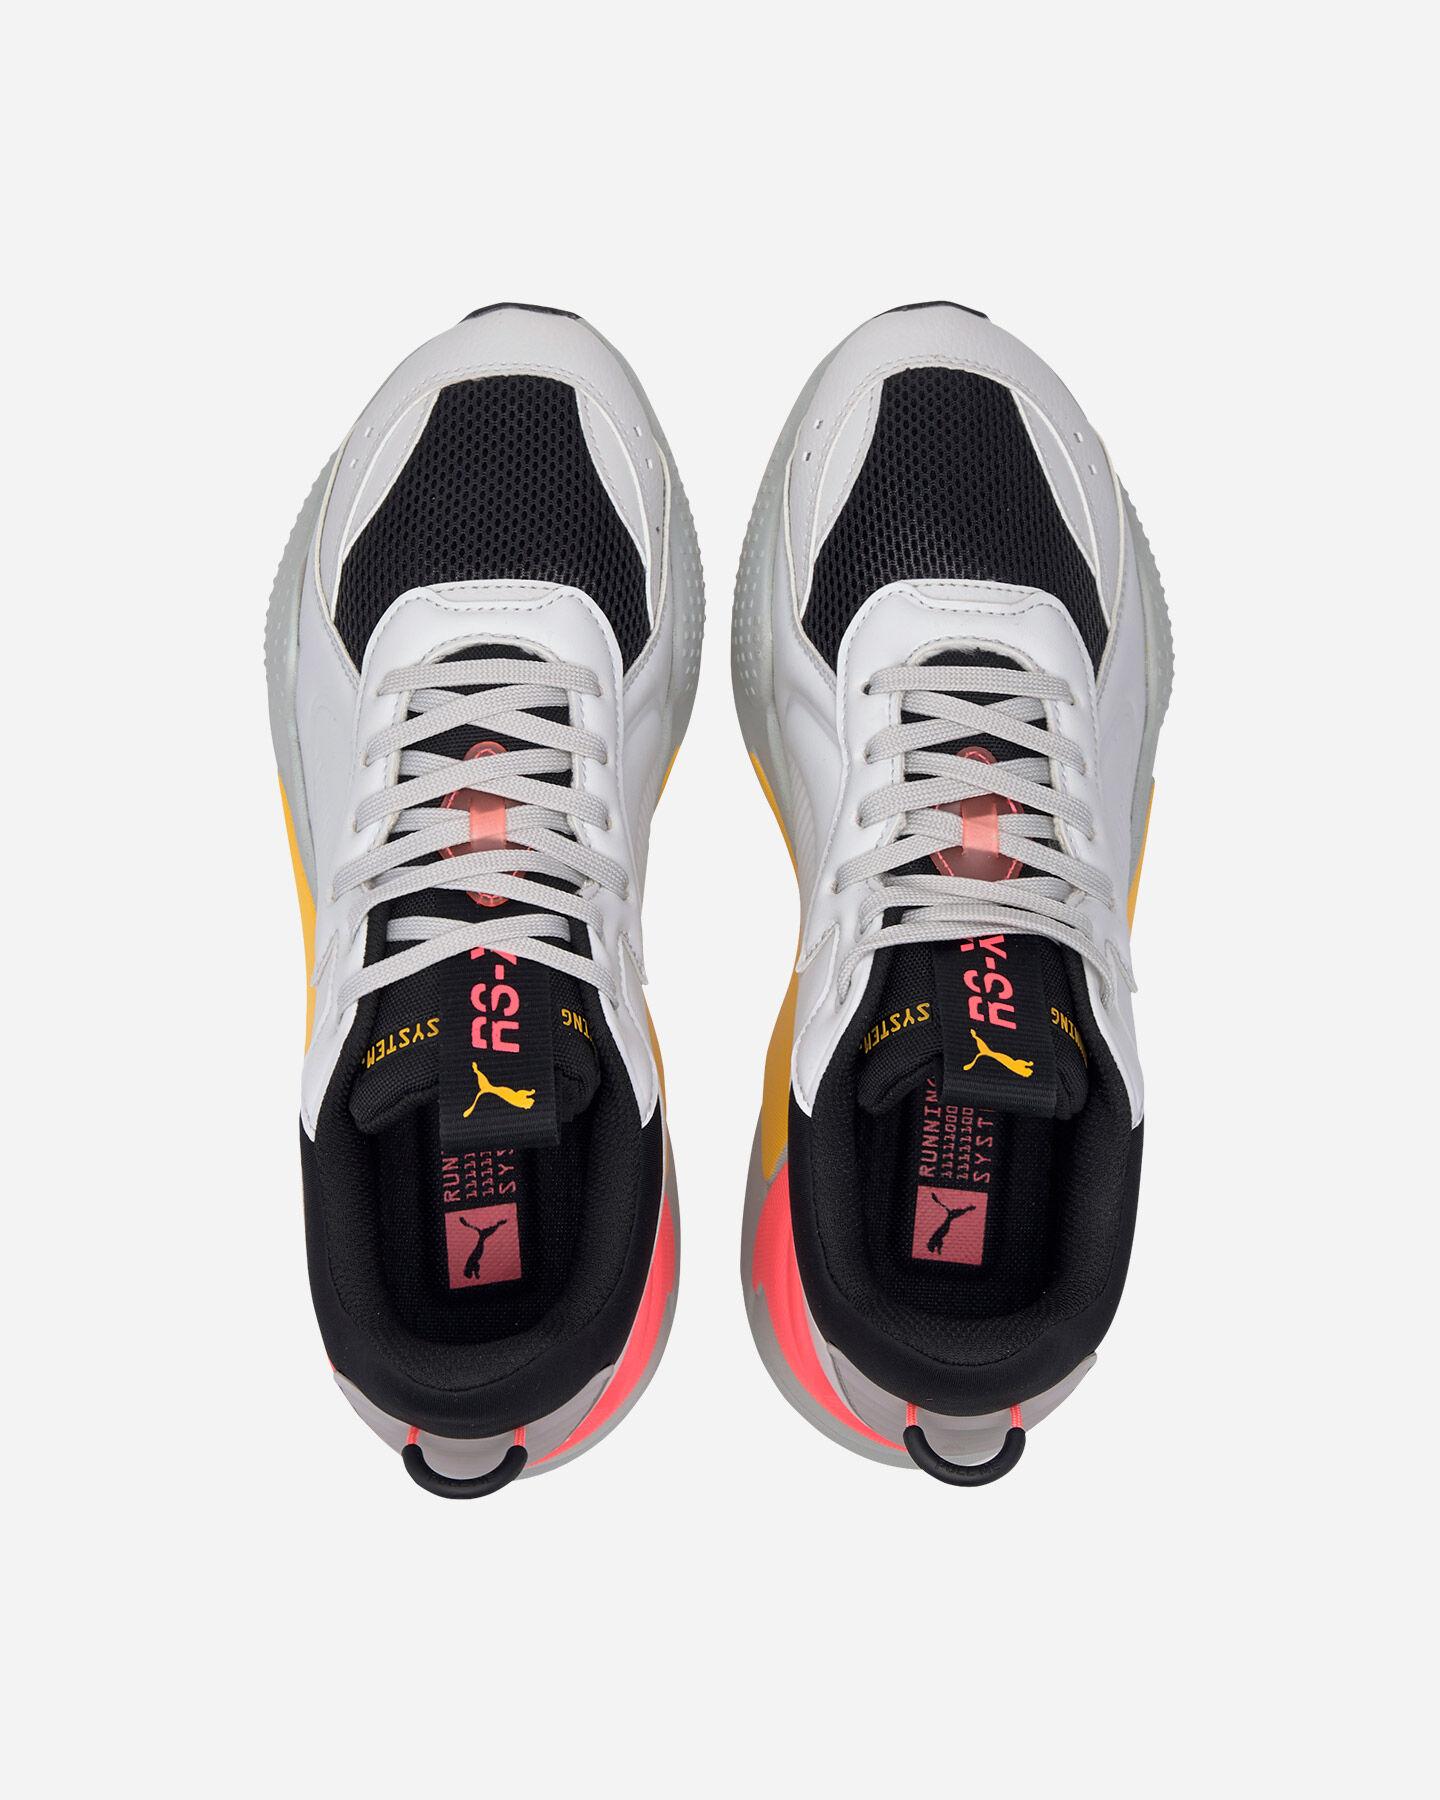  Scarpe sneakers PUMA RS-X MASTER M S5172899|03|3 scatto 3